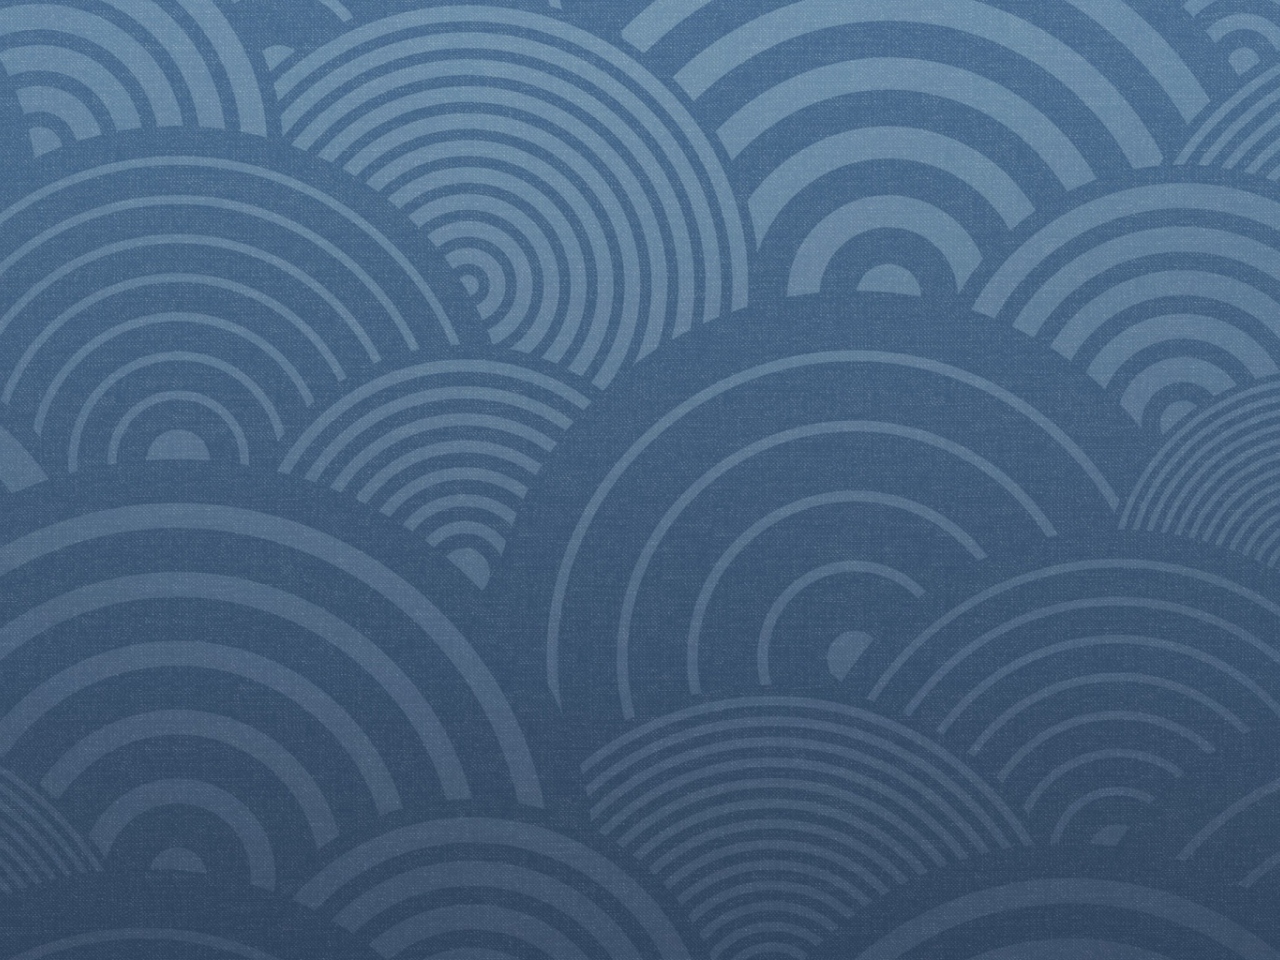 Das Blue Circles Wallpaper 1280x960